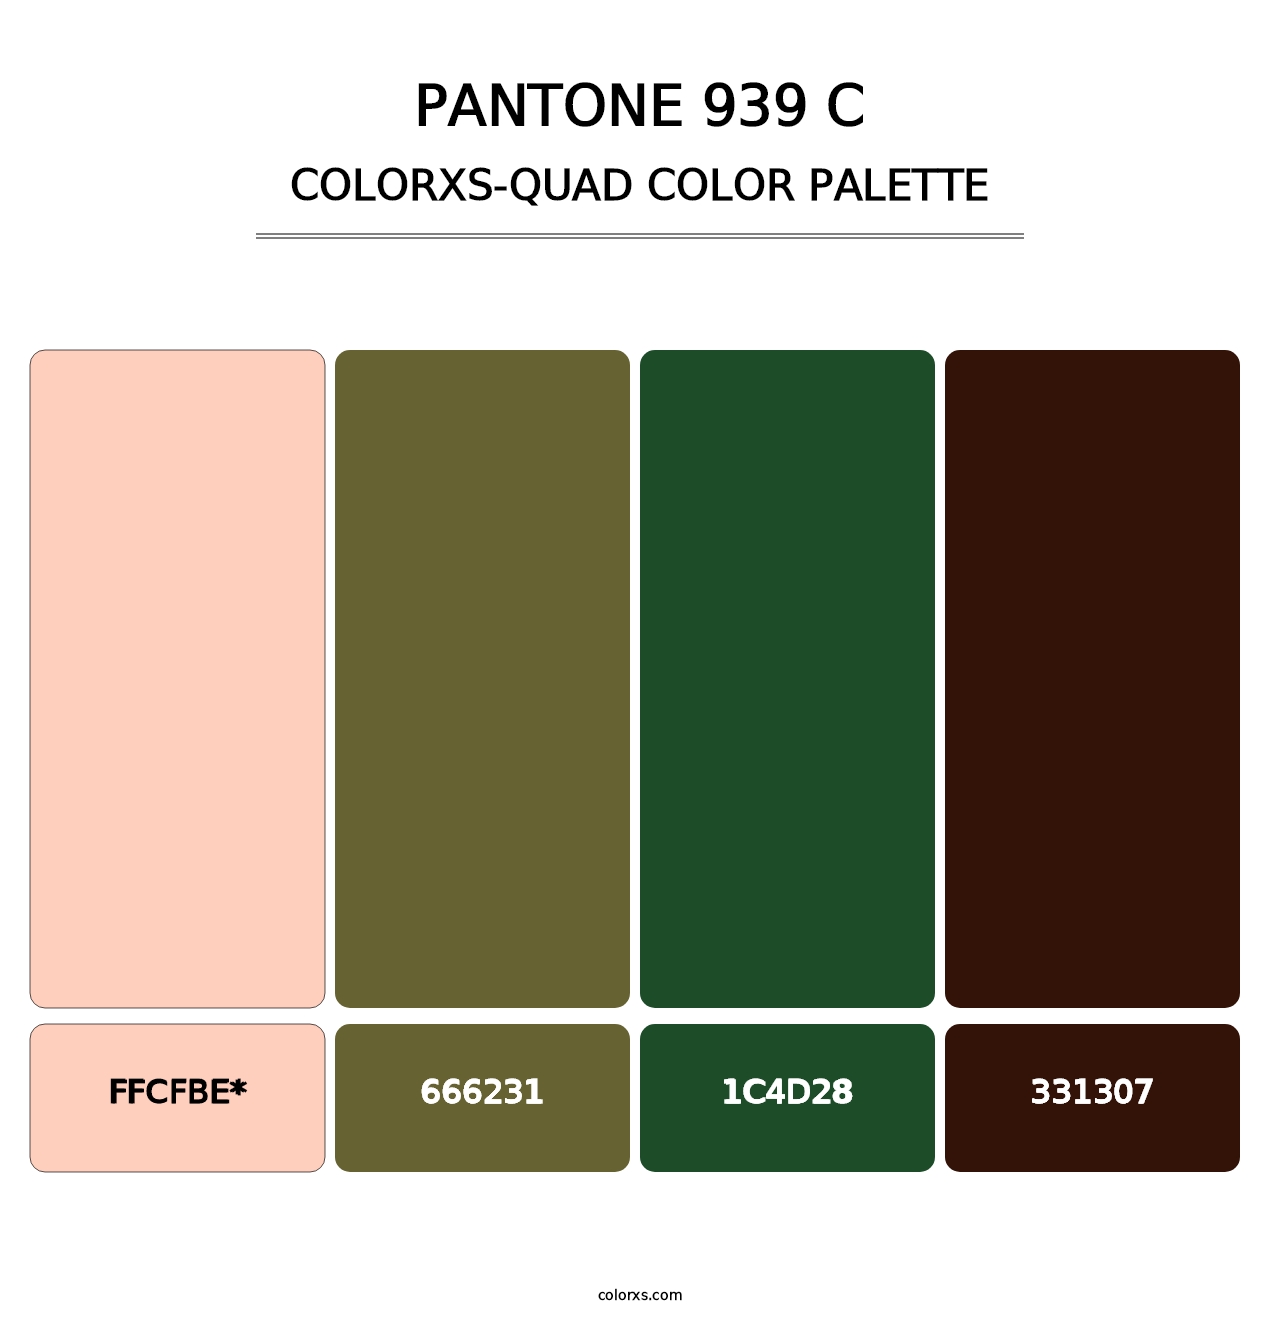 PANTONE 939 C - Colorxs Quad Palette